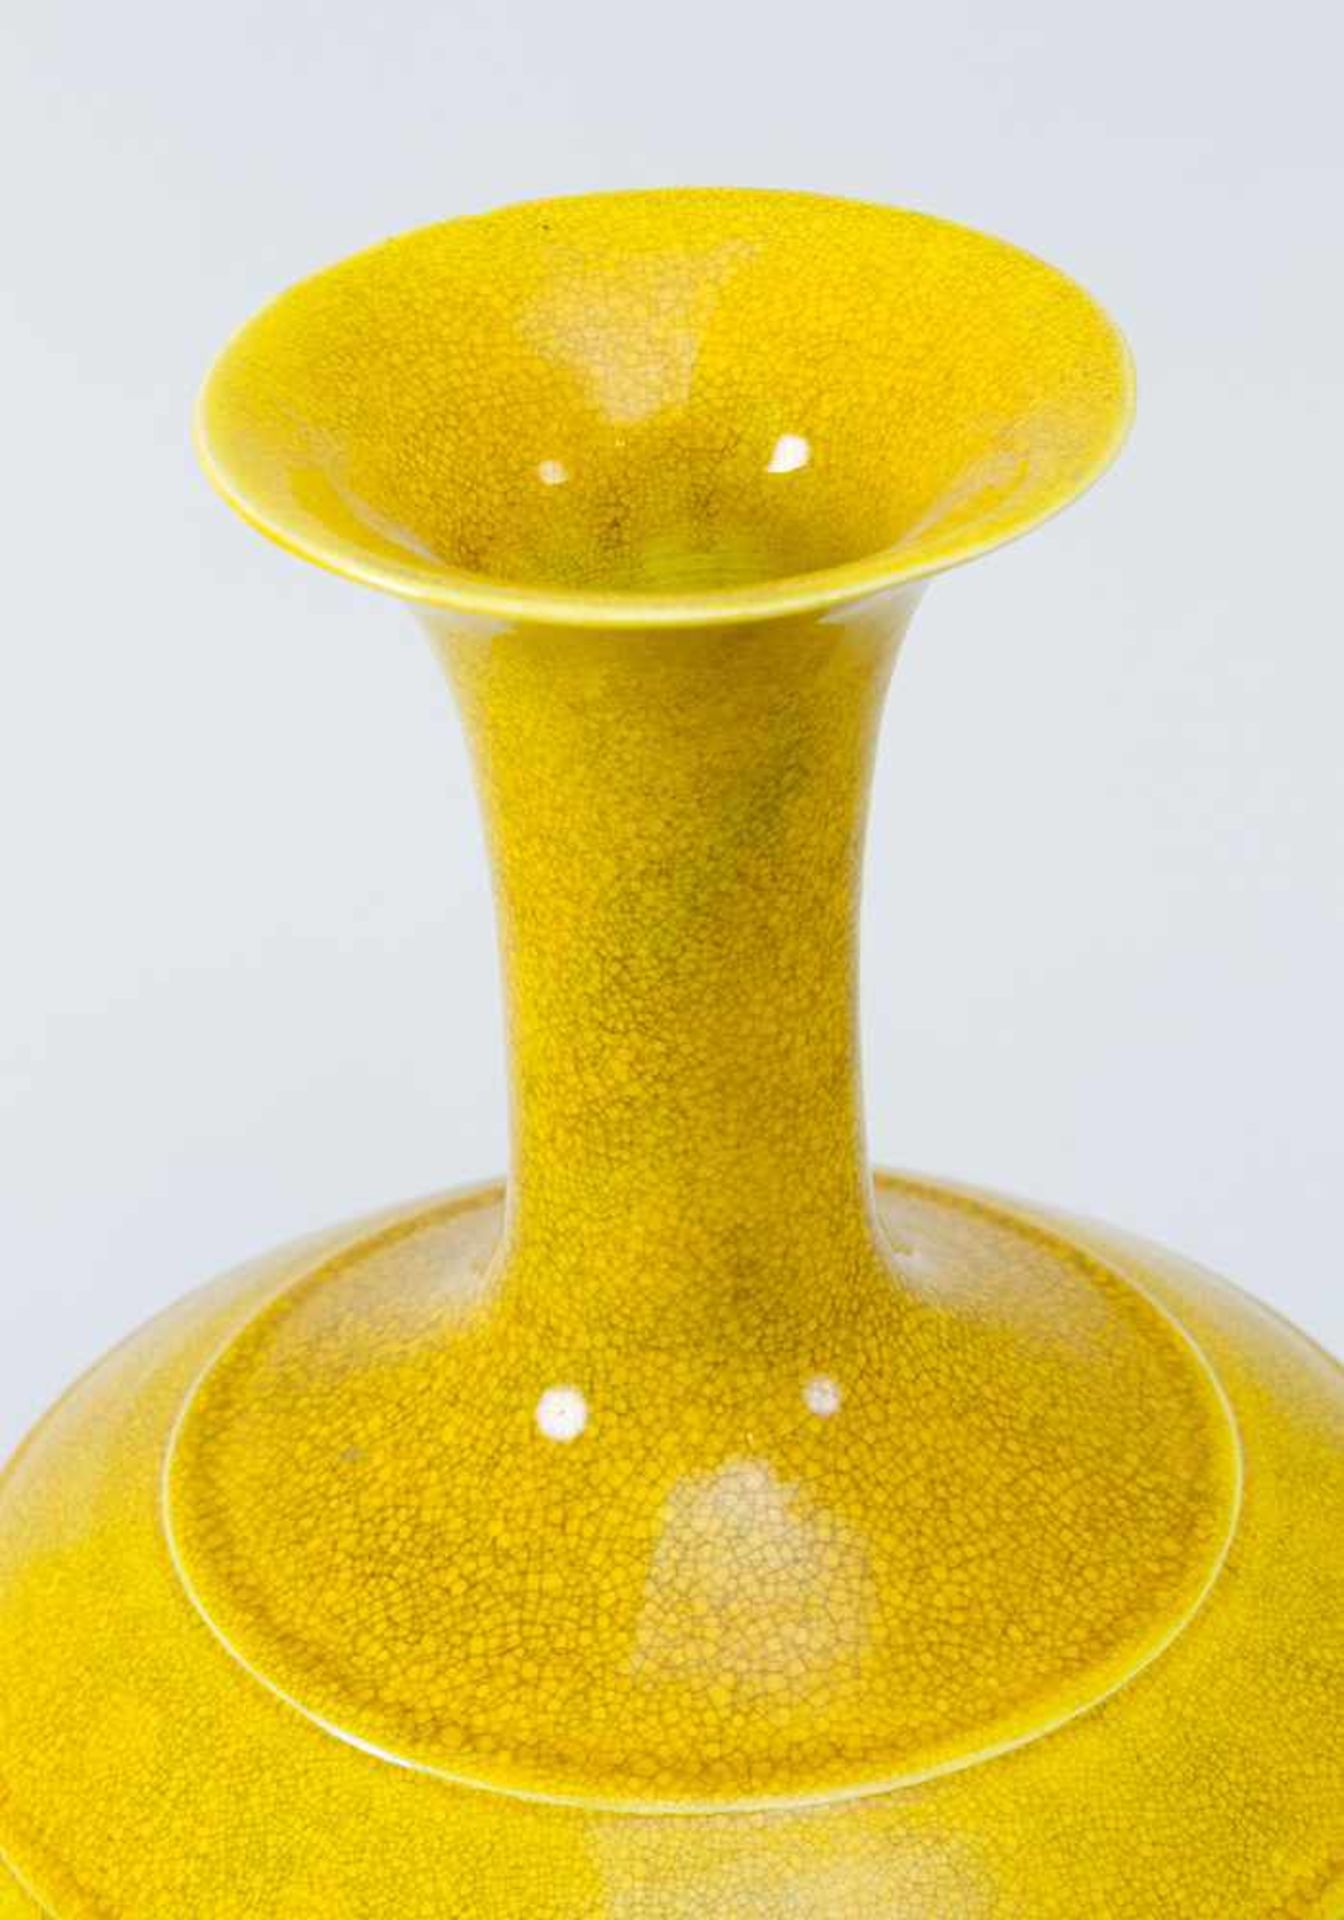 Rare Chinese porcelain vase - Image 2 of 3